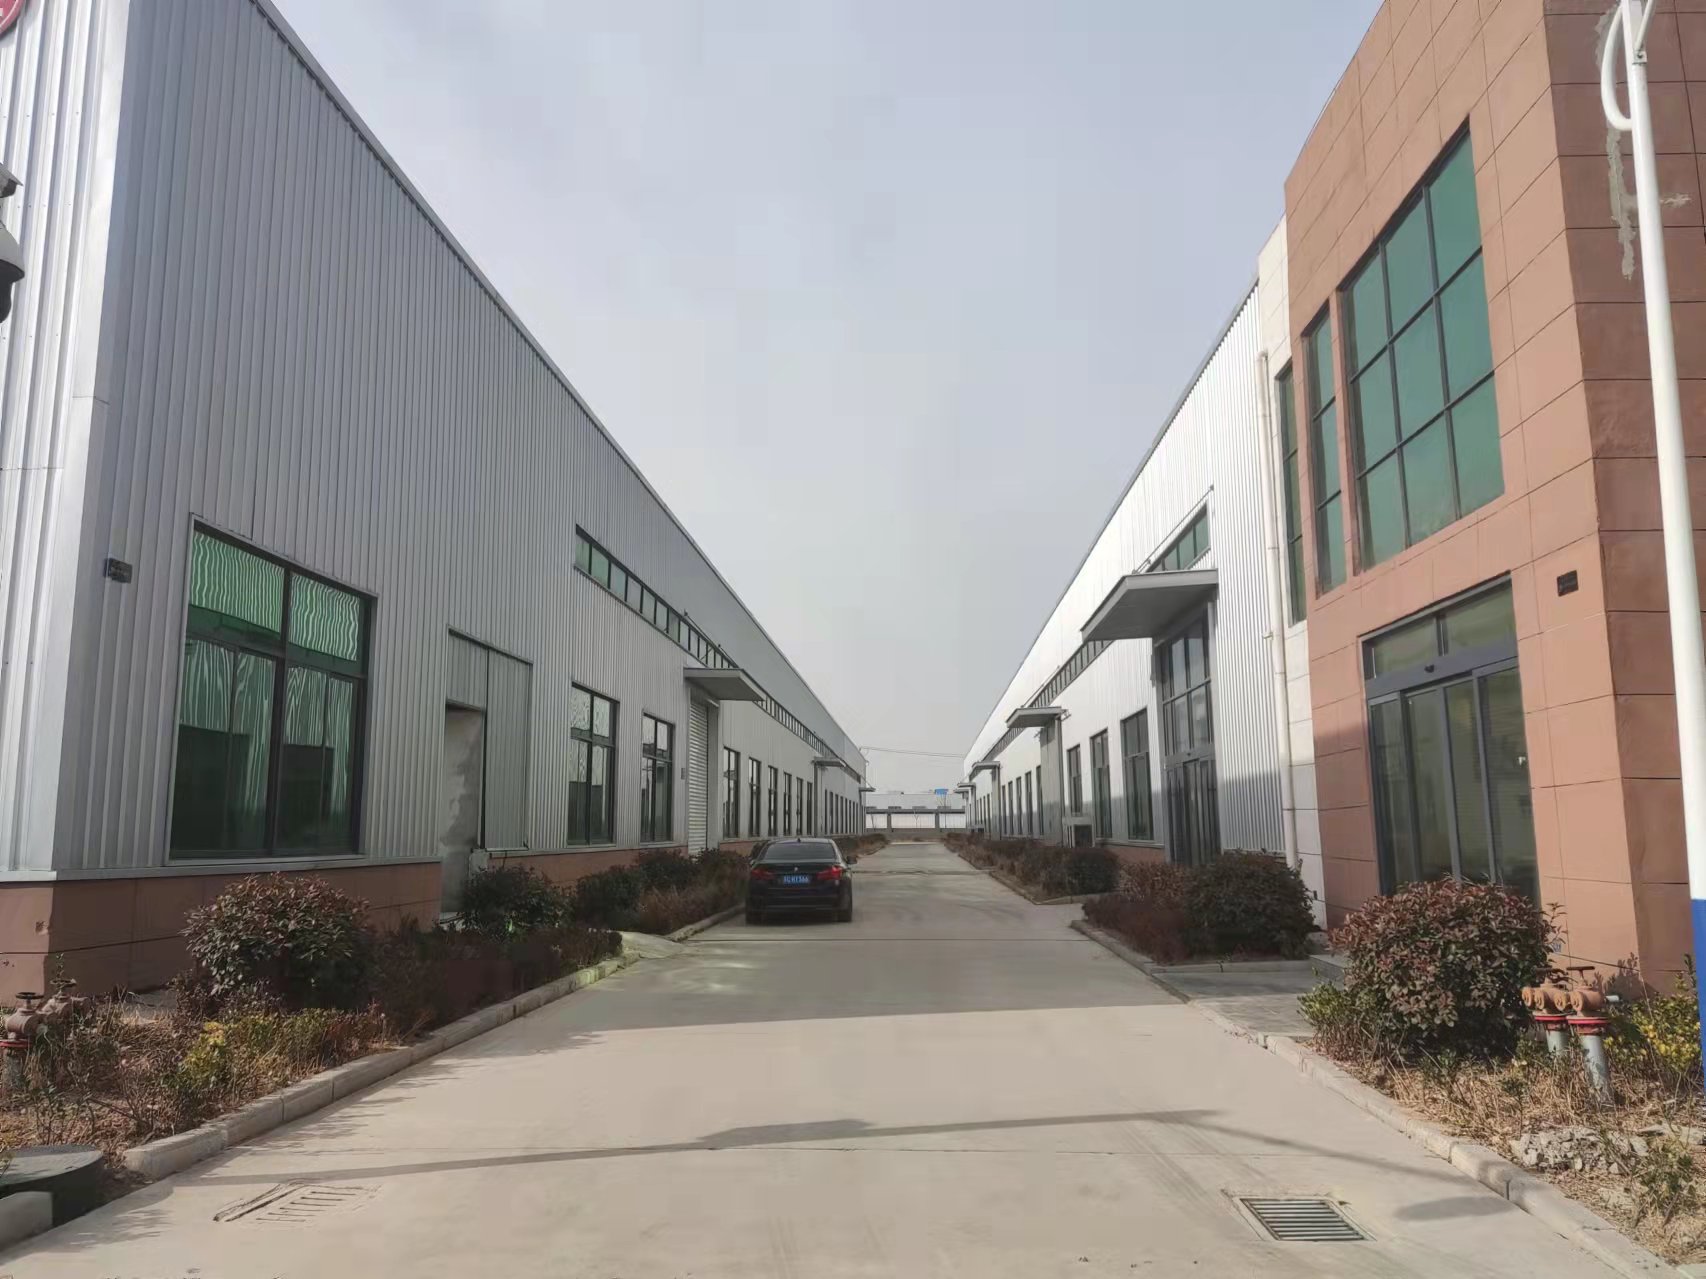  毅禾智地产业园单层钢结构 双层框架结构标准厂房50年产权